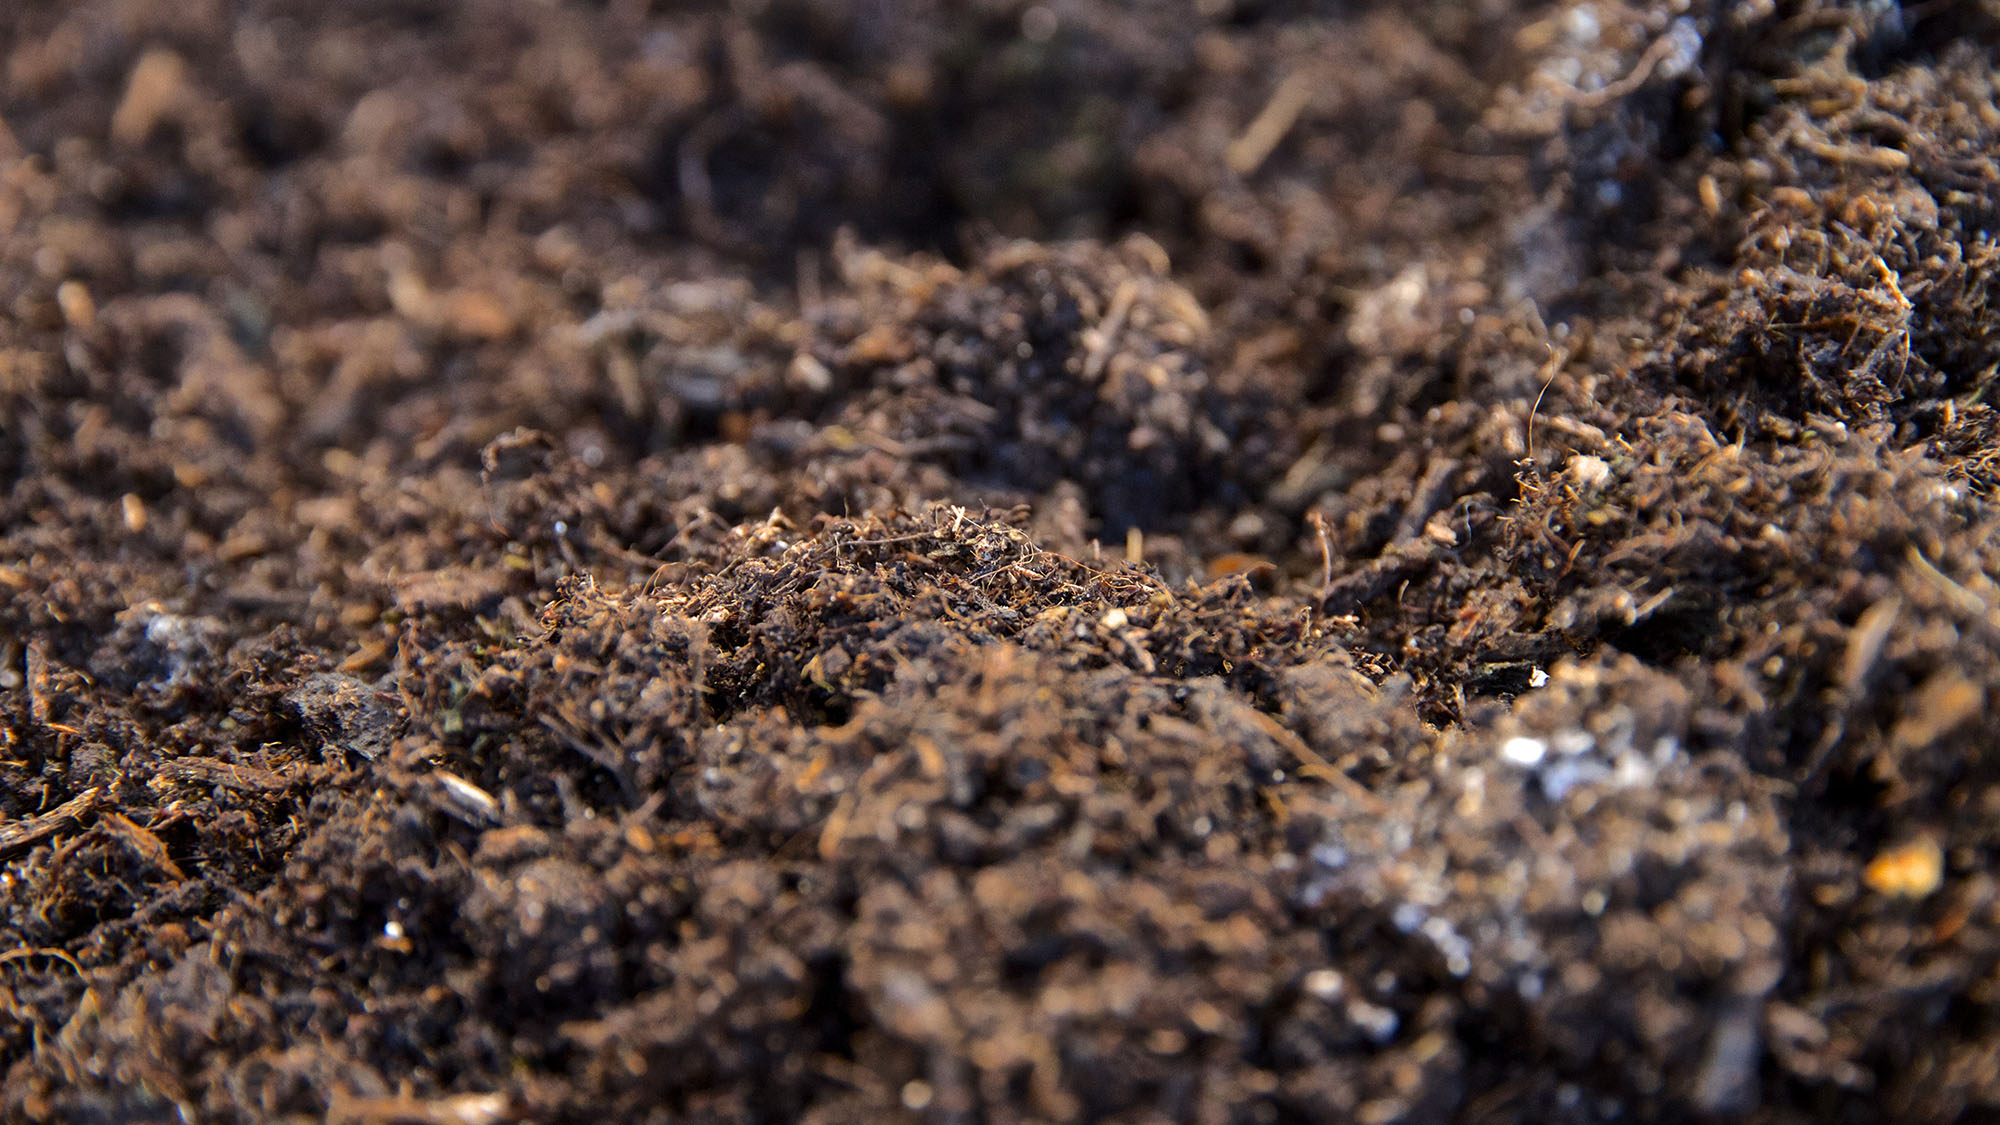 Soil analysis